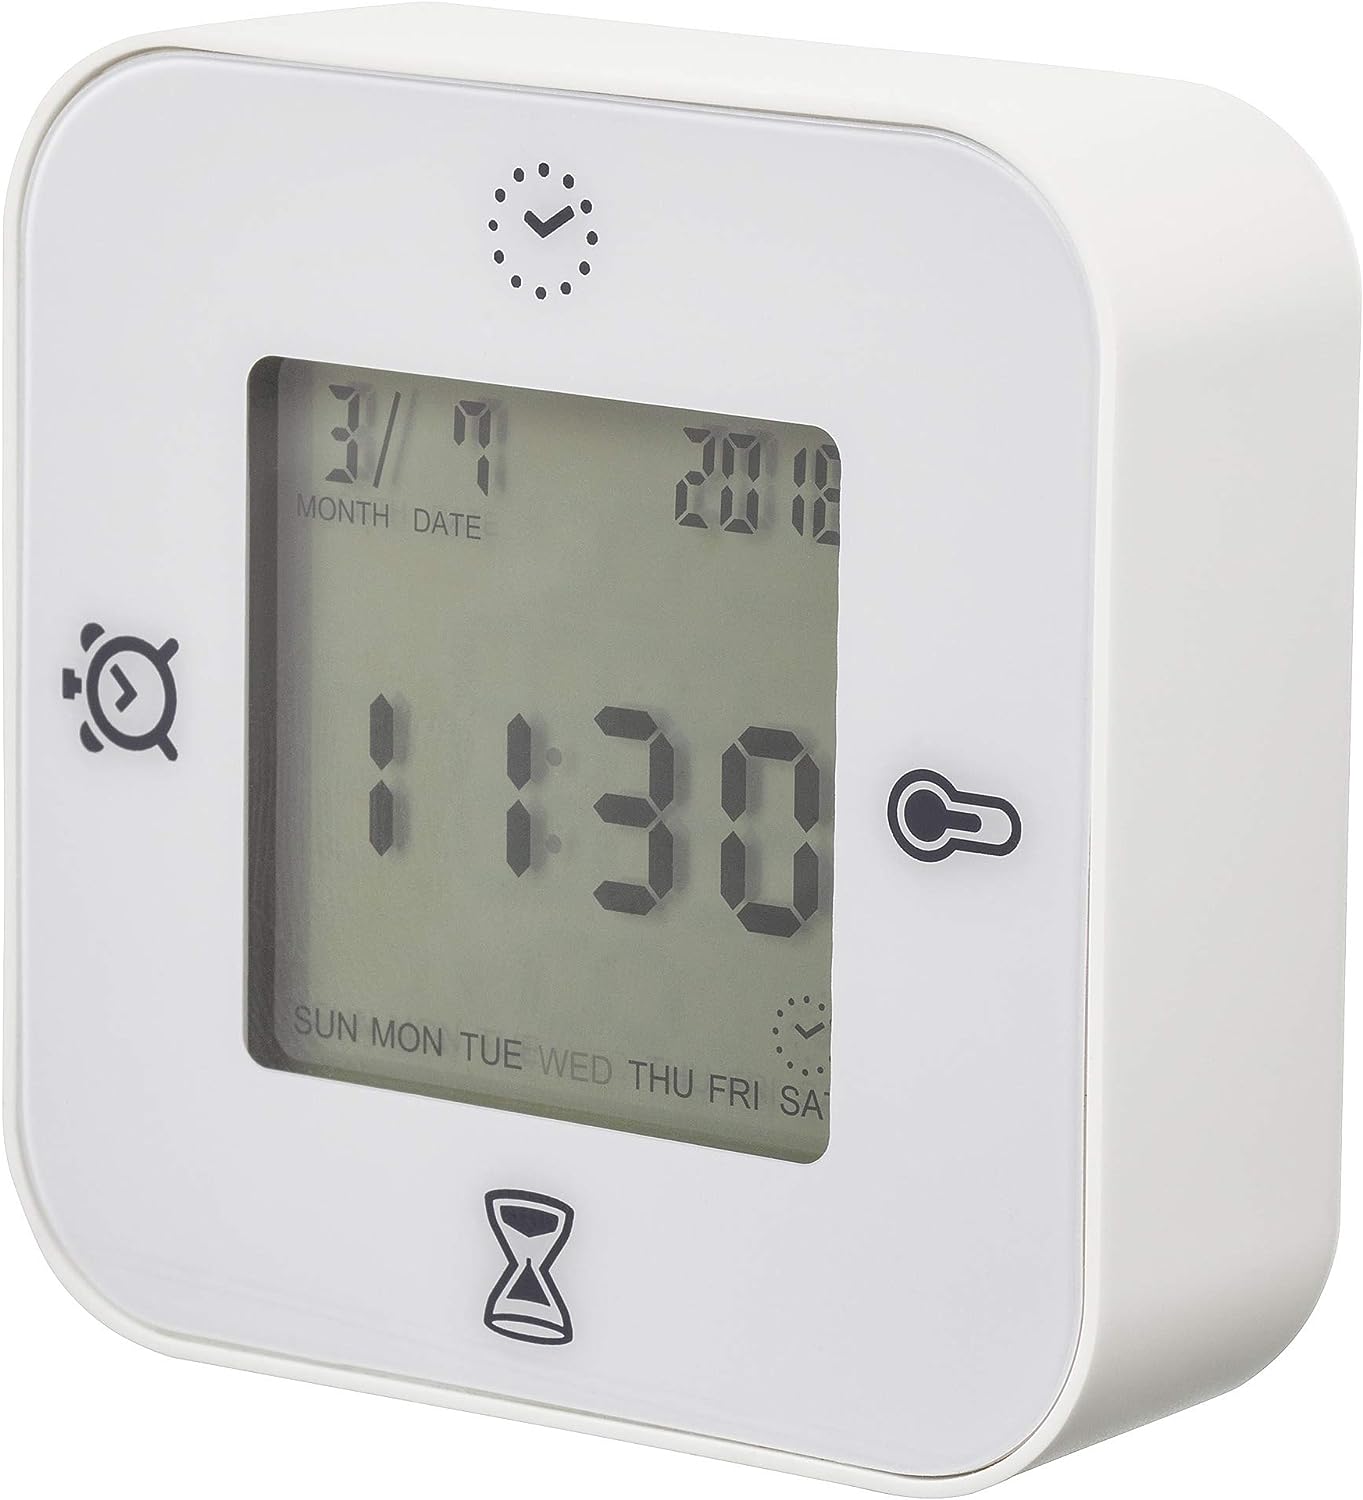 イケア クロッキス 時計 温度計 デジタルクロックインテリア雑貨リビング ホワイト